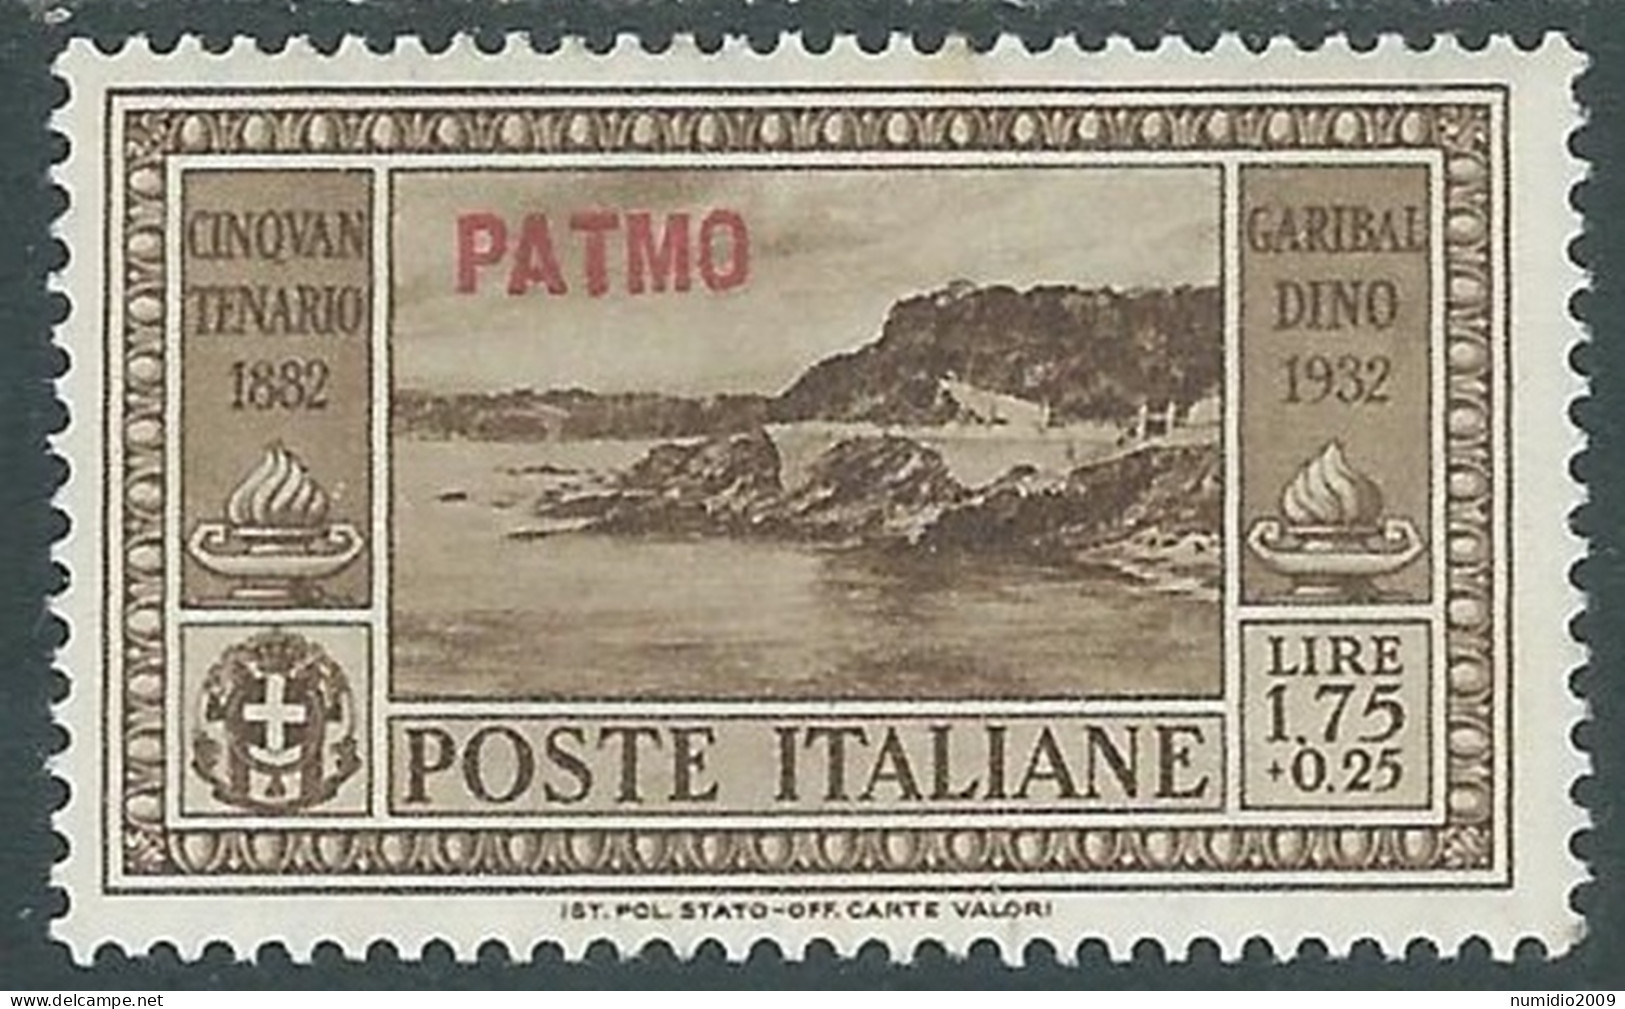 1932 EGEO PATMO GARIBALDI 1,75 LIRE MH * - I45-8 - Egeo (Patmo)